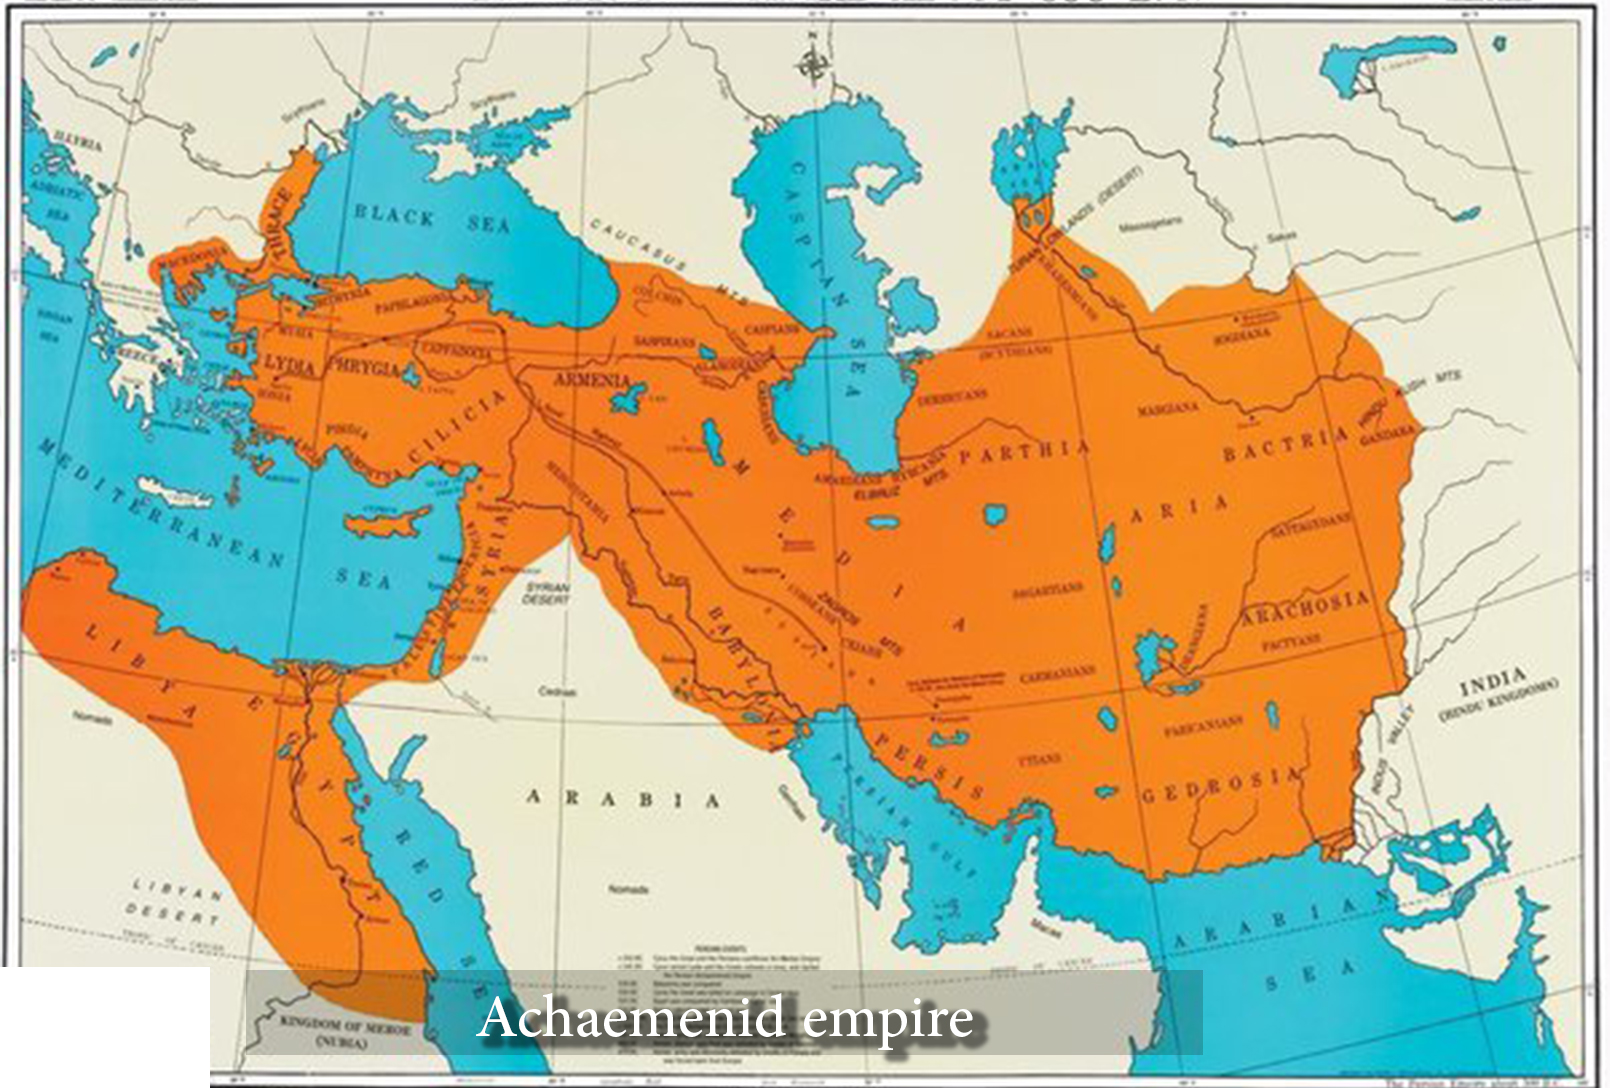 History of Iran - Achaemenid empire